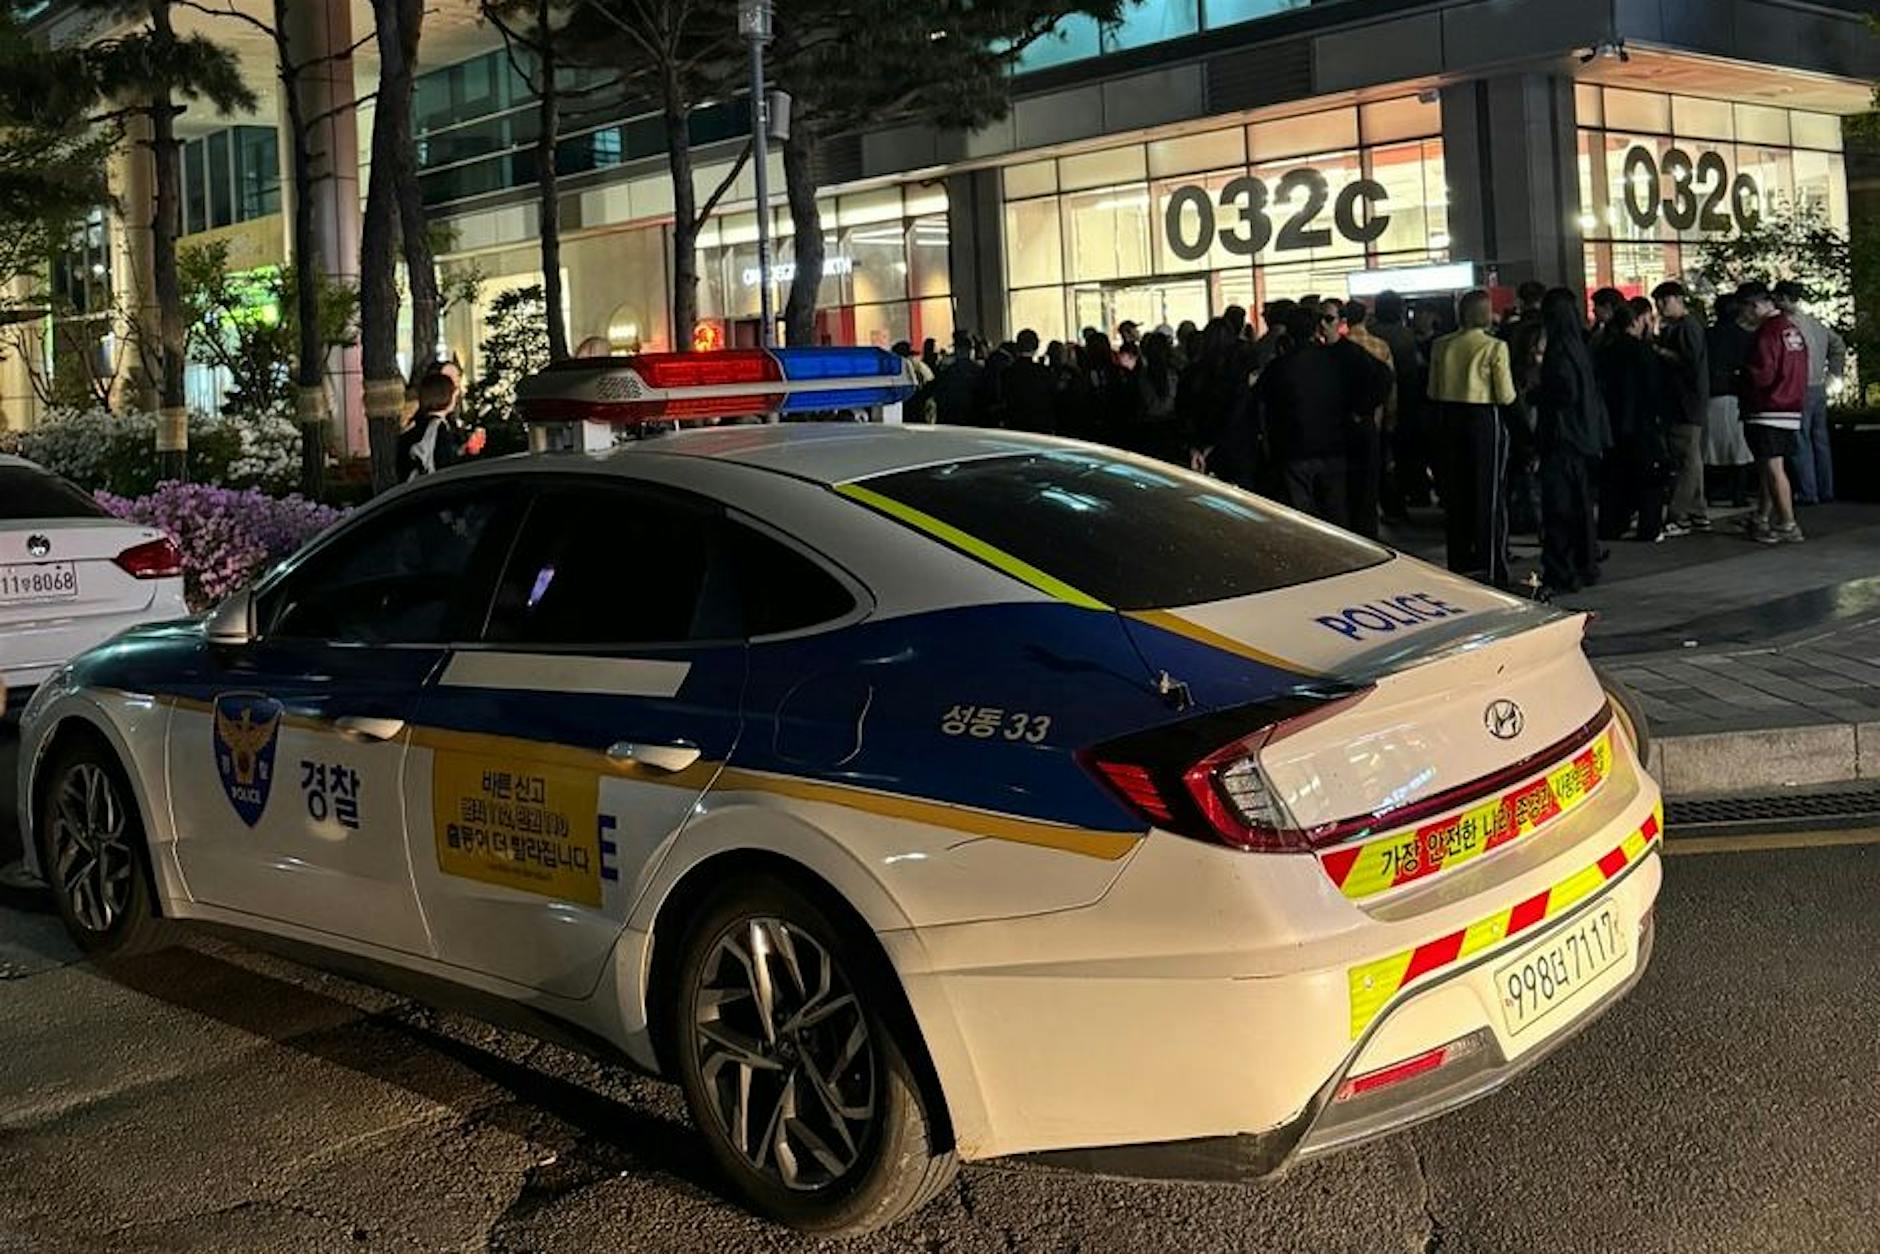 Polizei-Einsatz: Store-Opening von Berliner Marke 032c in Seoul ruft Ordnungshüter auf den Plan